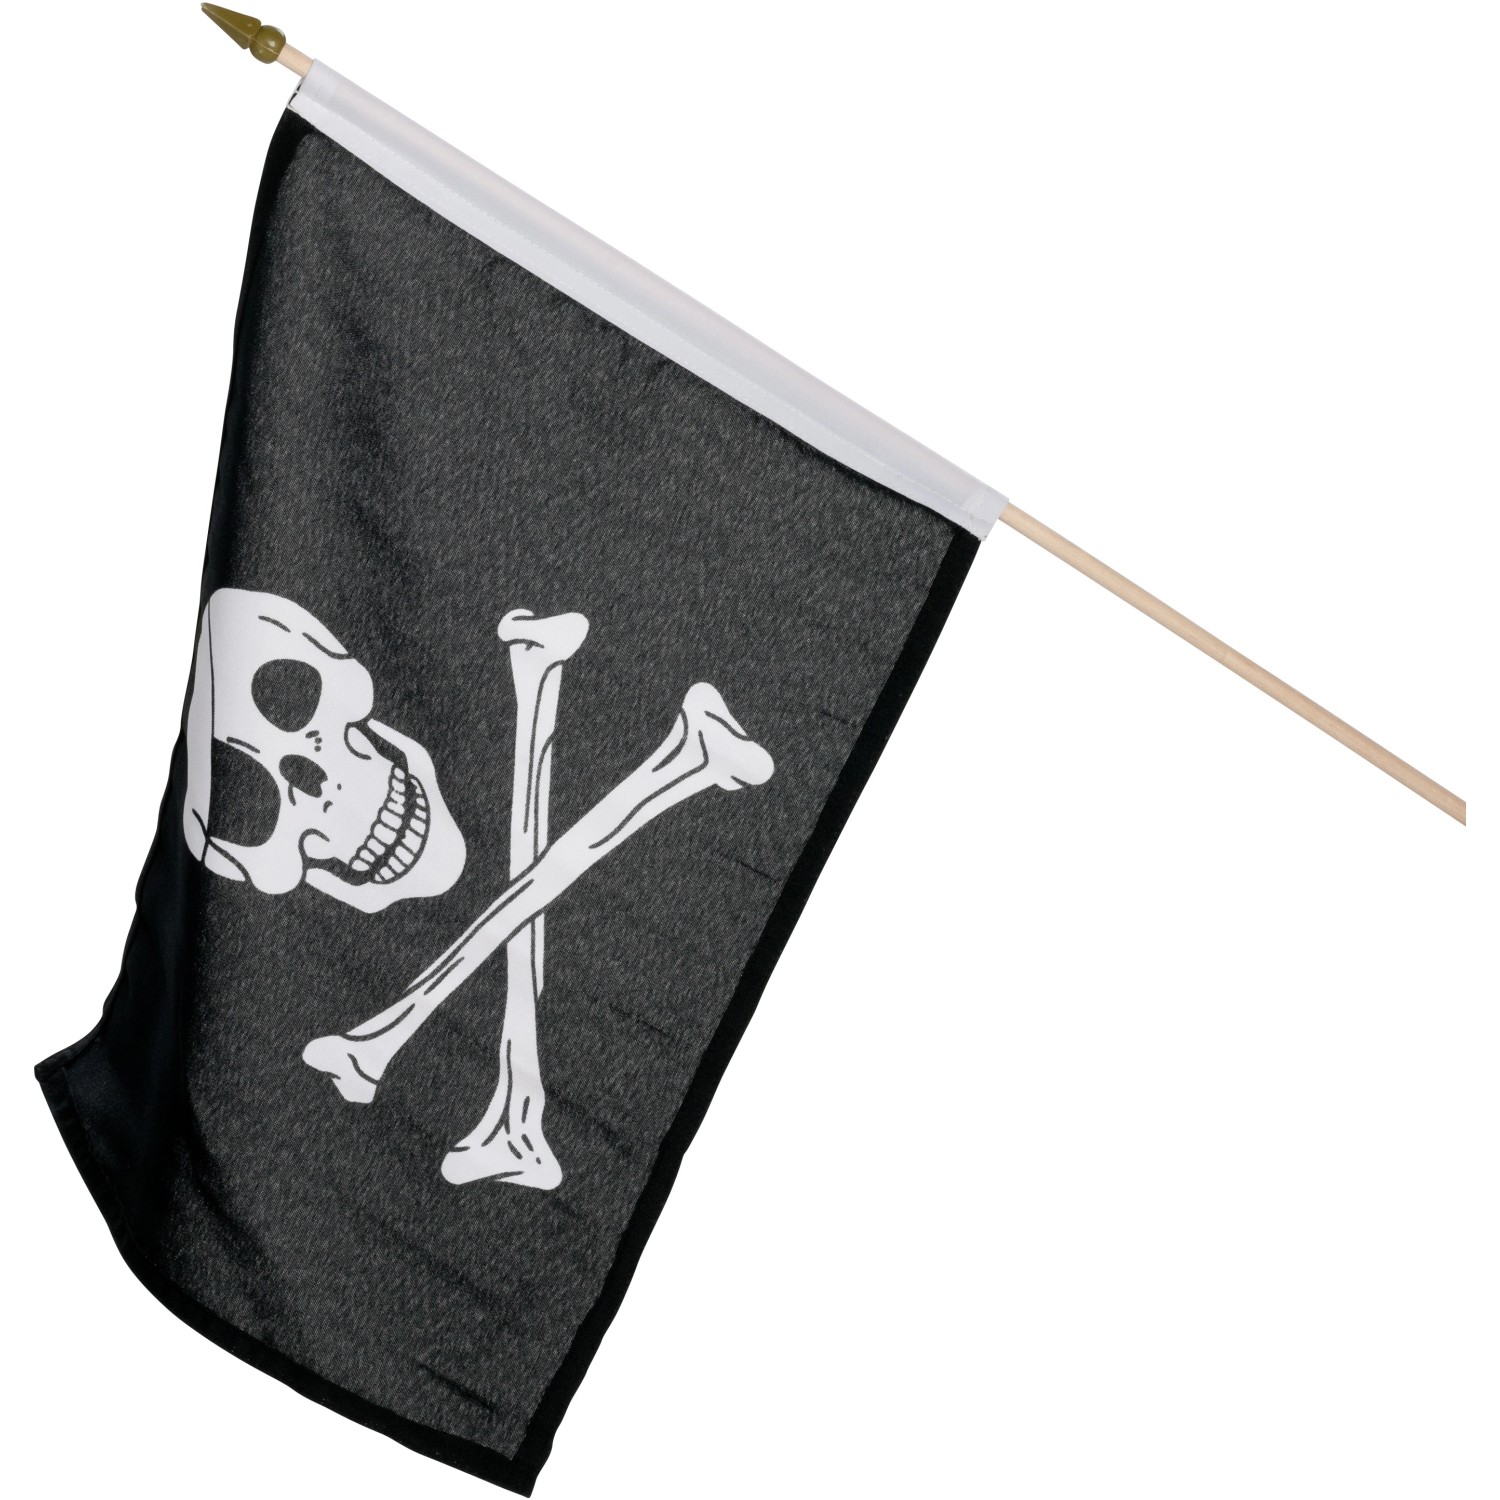 Piraten Flagge Button schwarz weiss rot - €1.50 - Versandkostenfrei ab 10  Stück